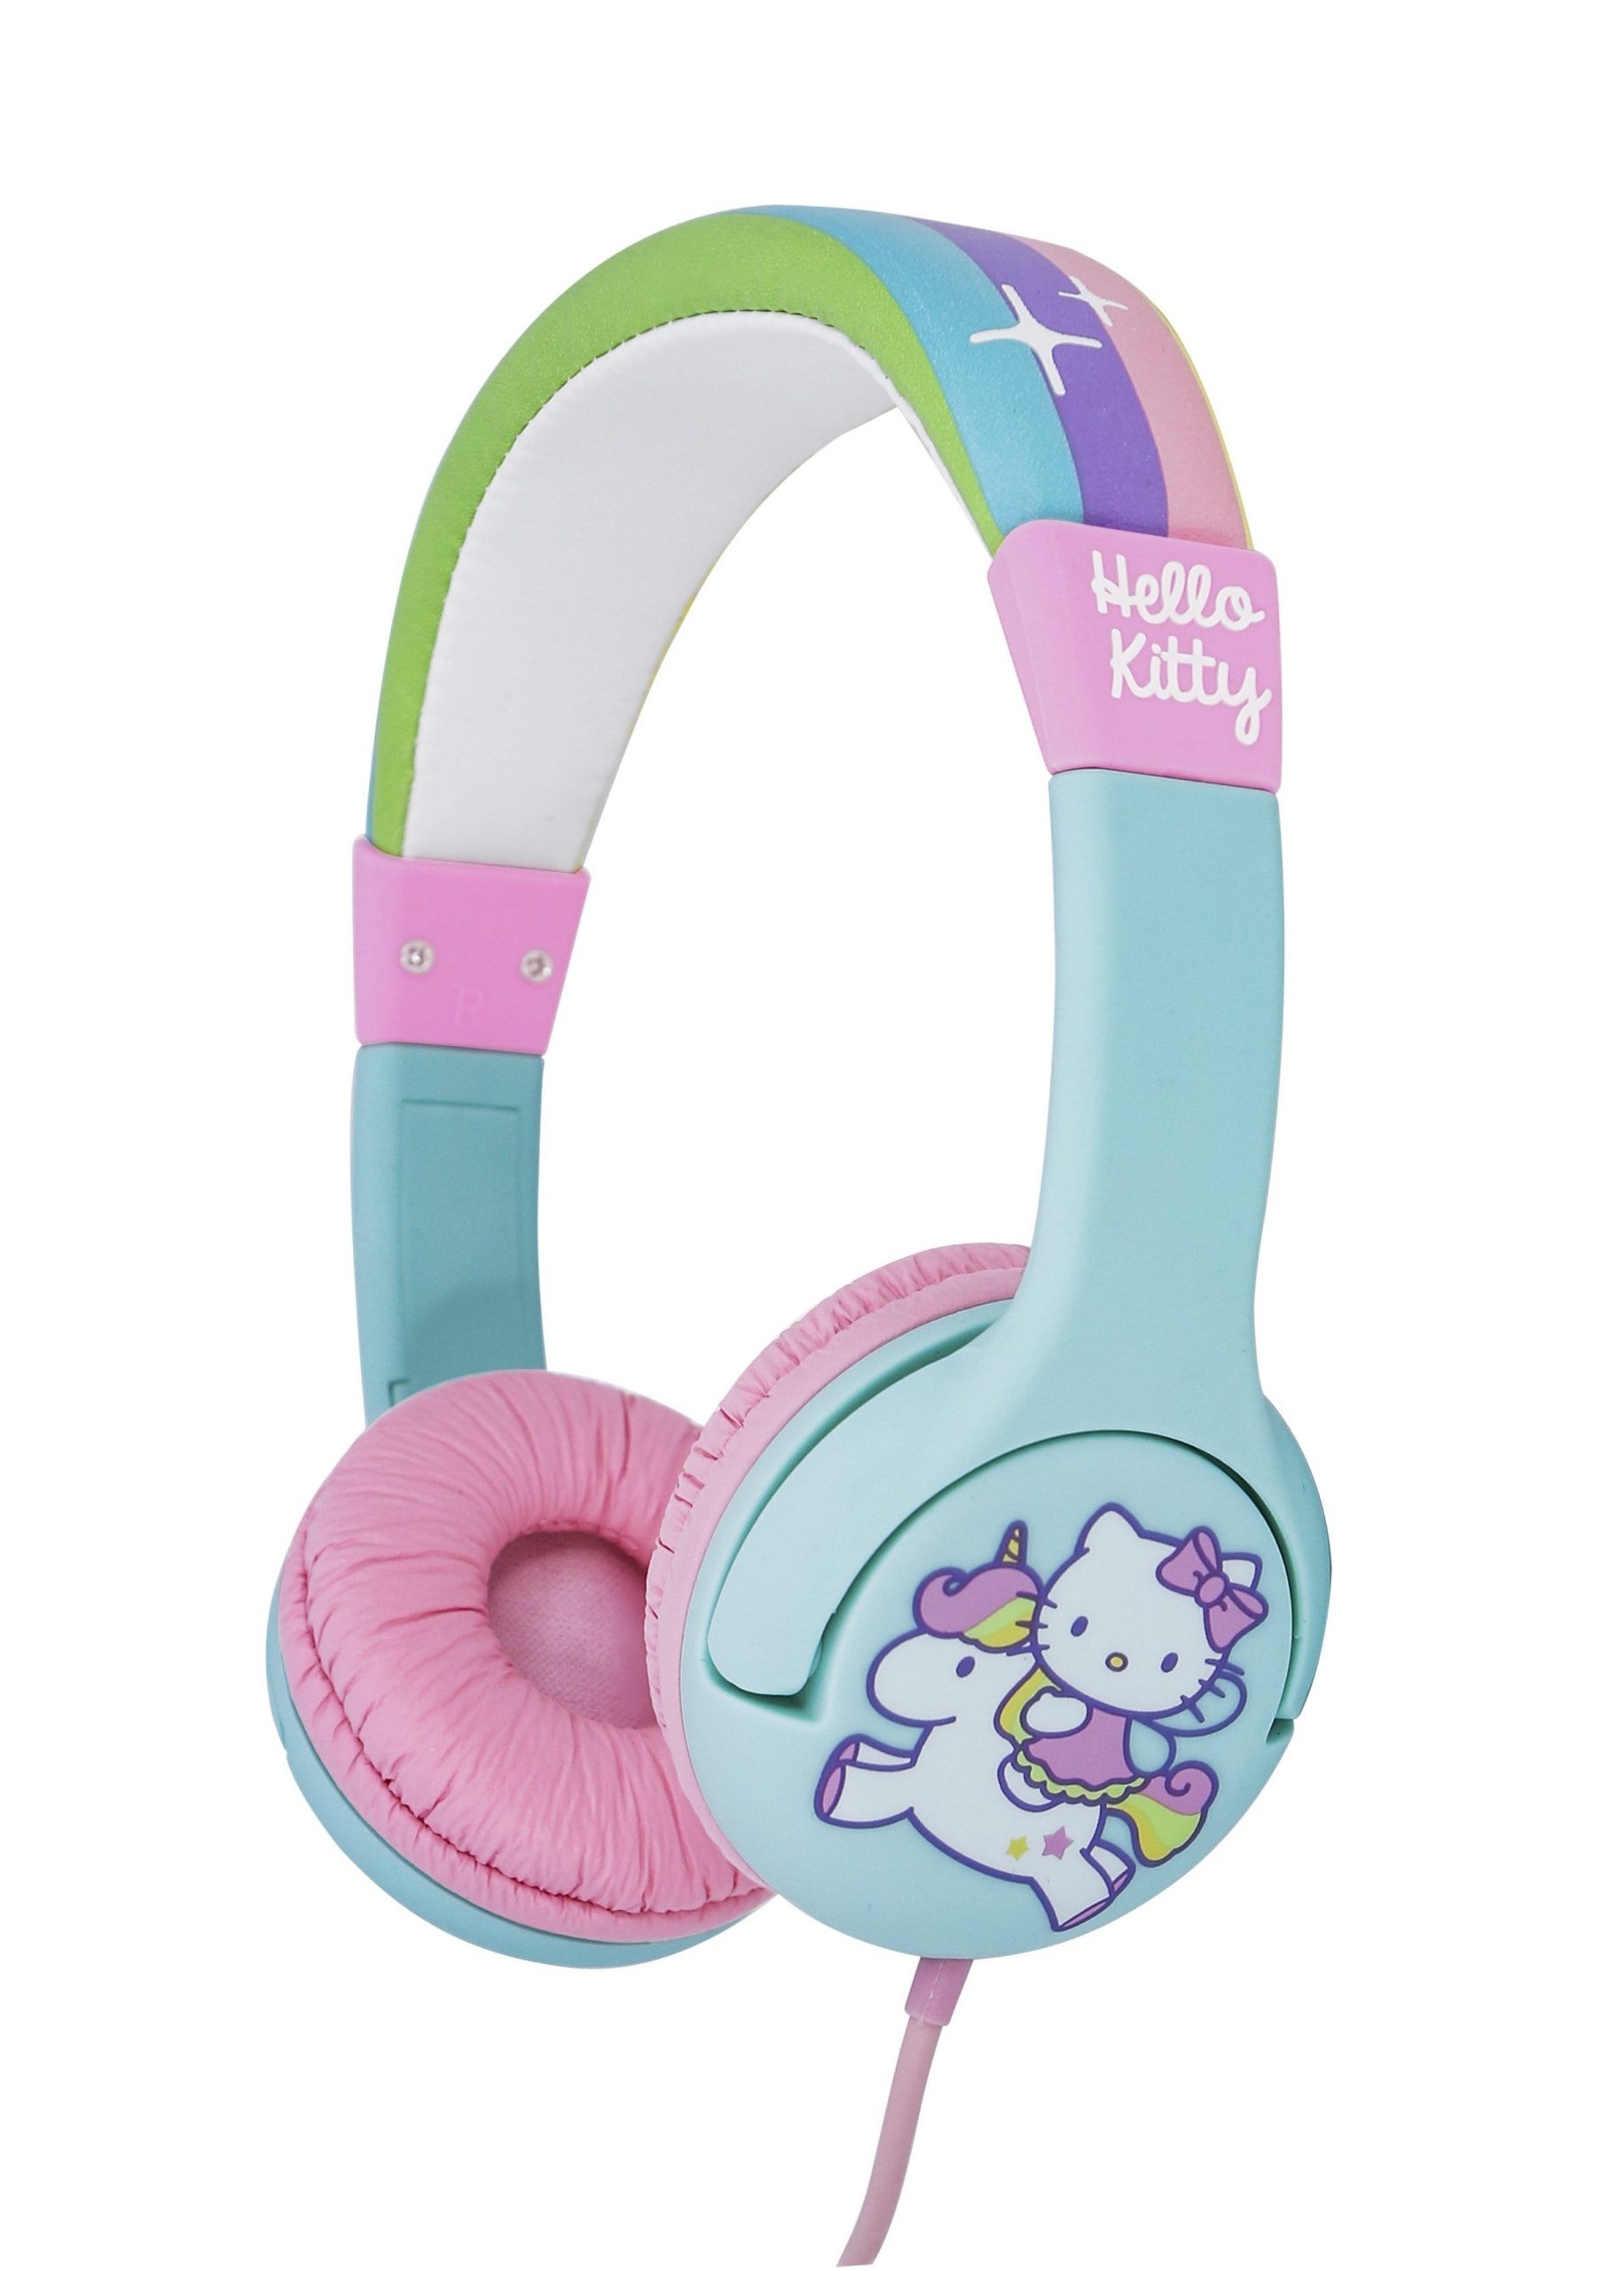 سماعات اطفال سلكية قابلة للطي 85 ديسيبل هالو كيتي او تي ال Otl Hellokitty 85db Foldable Wired Children's Headphones - 2}